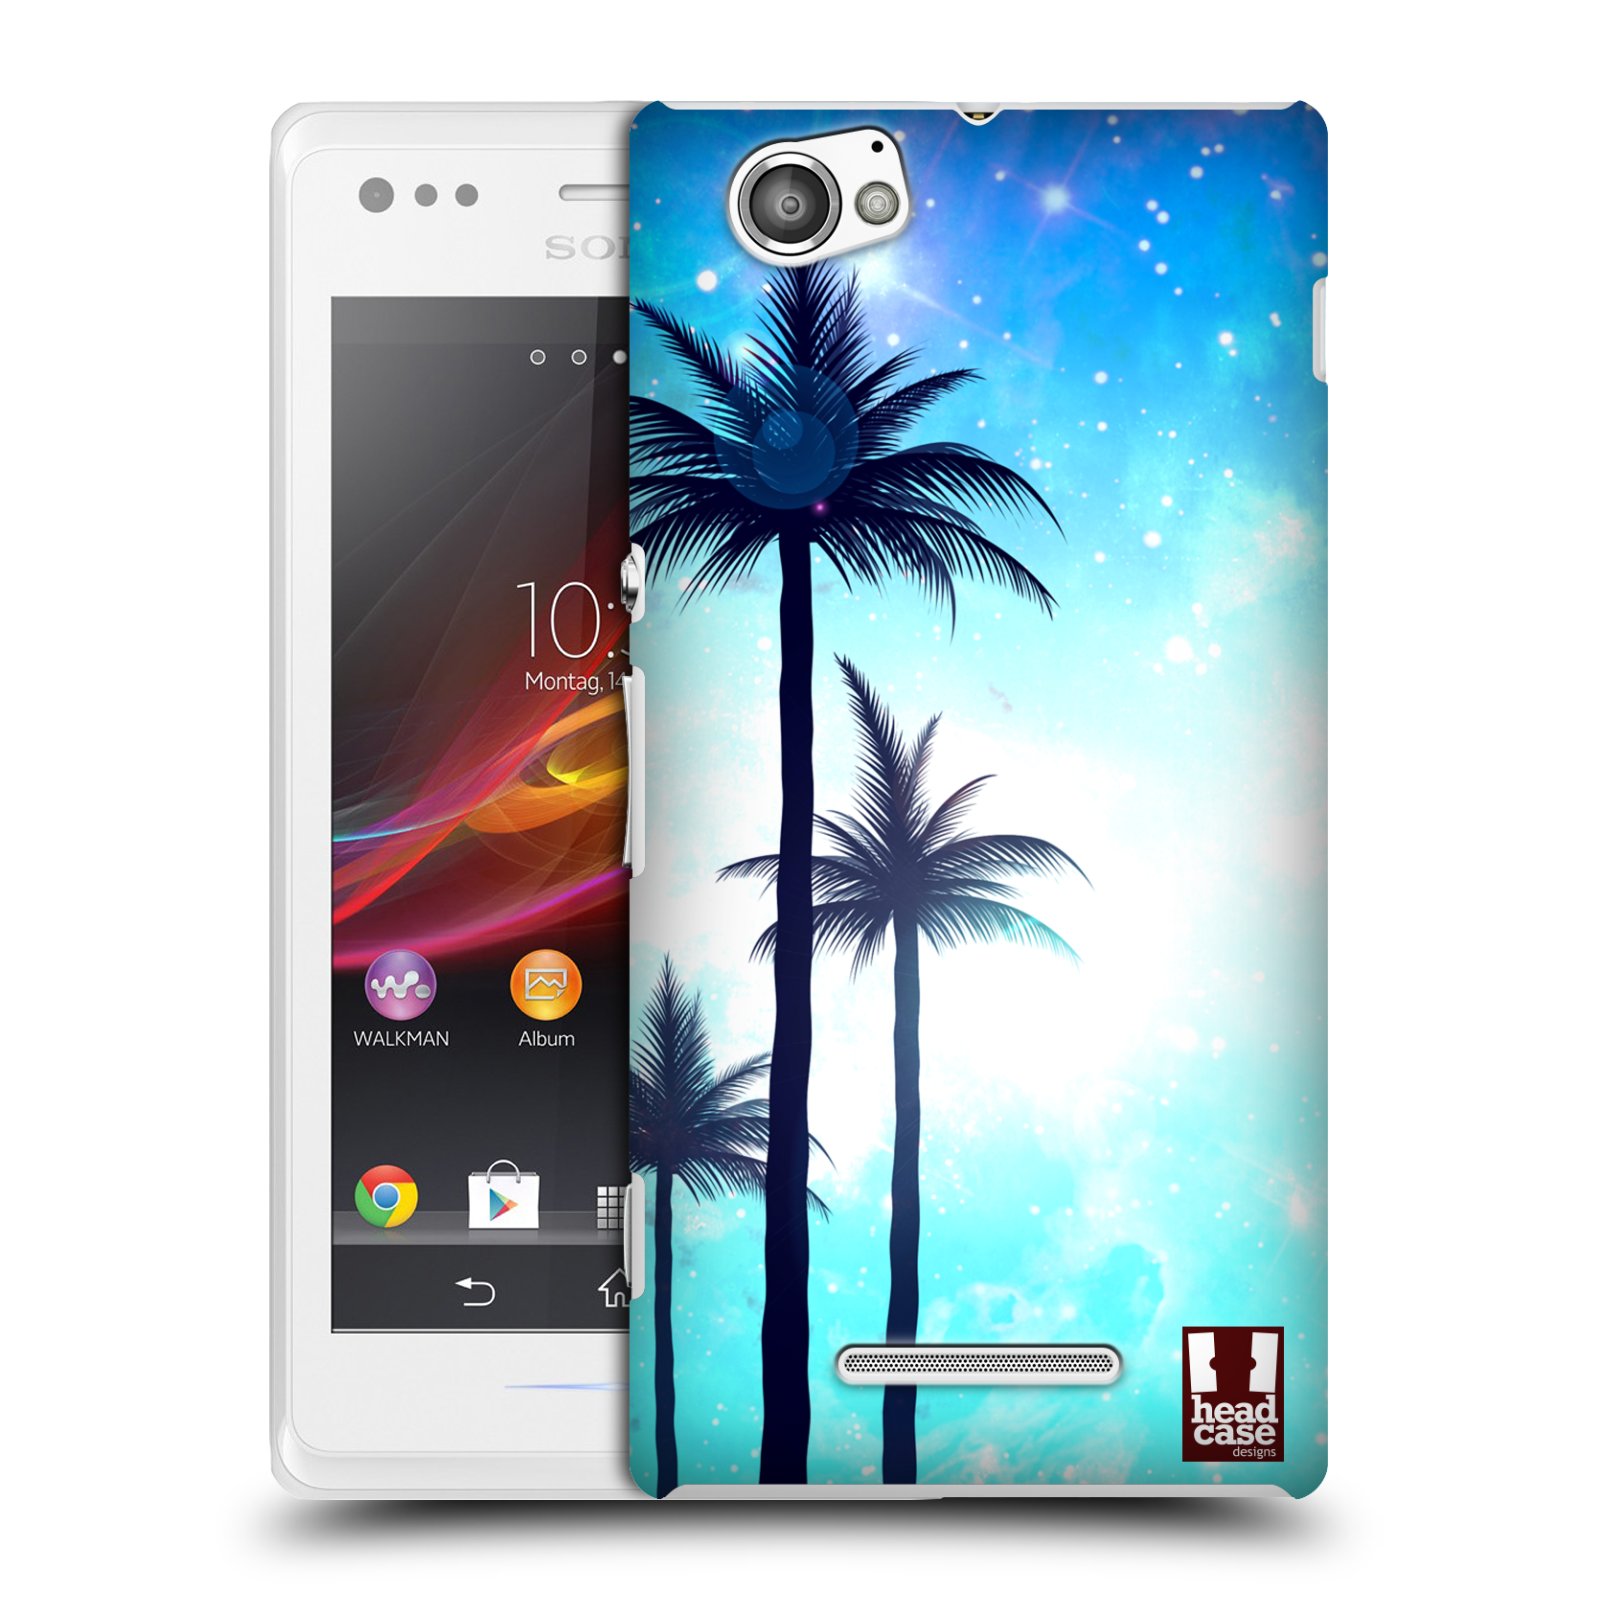 HEAD CASE plastový obal na mobil Sony Xperia M vzor Kreslený motiv silueta moře a palmy MODRÁ